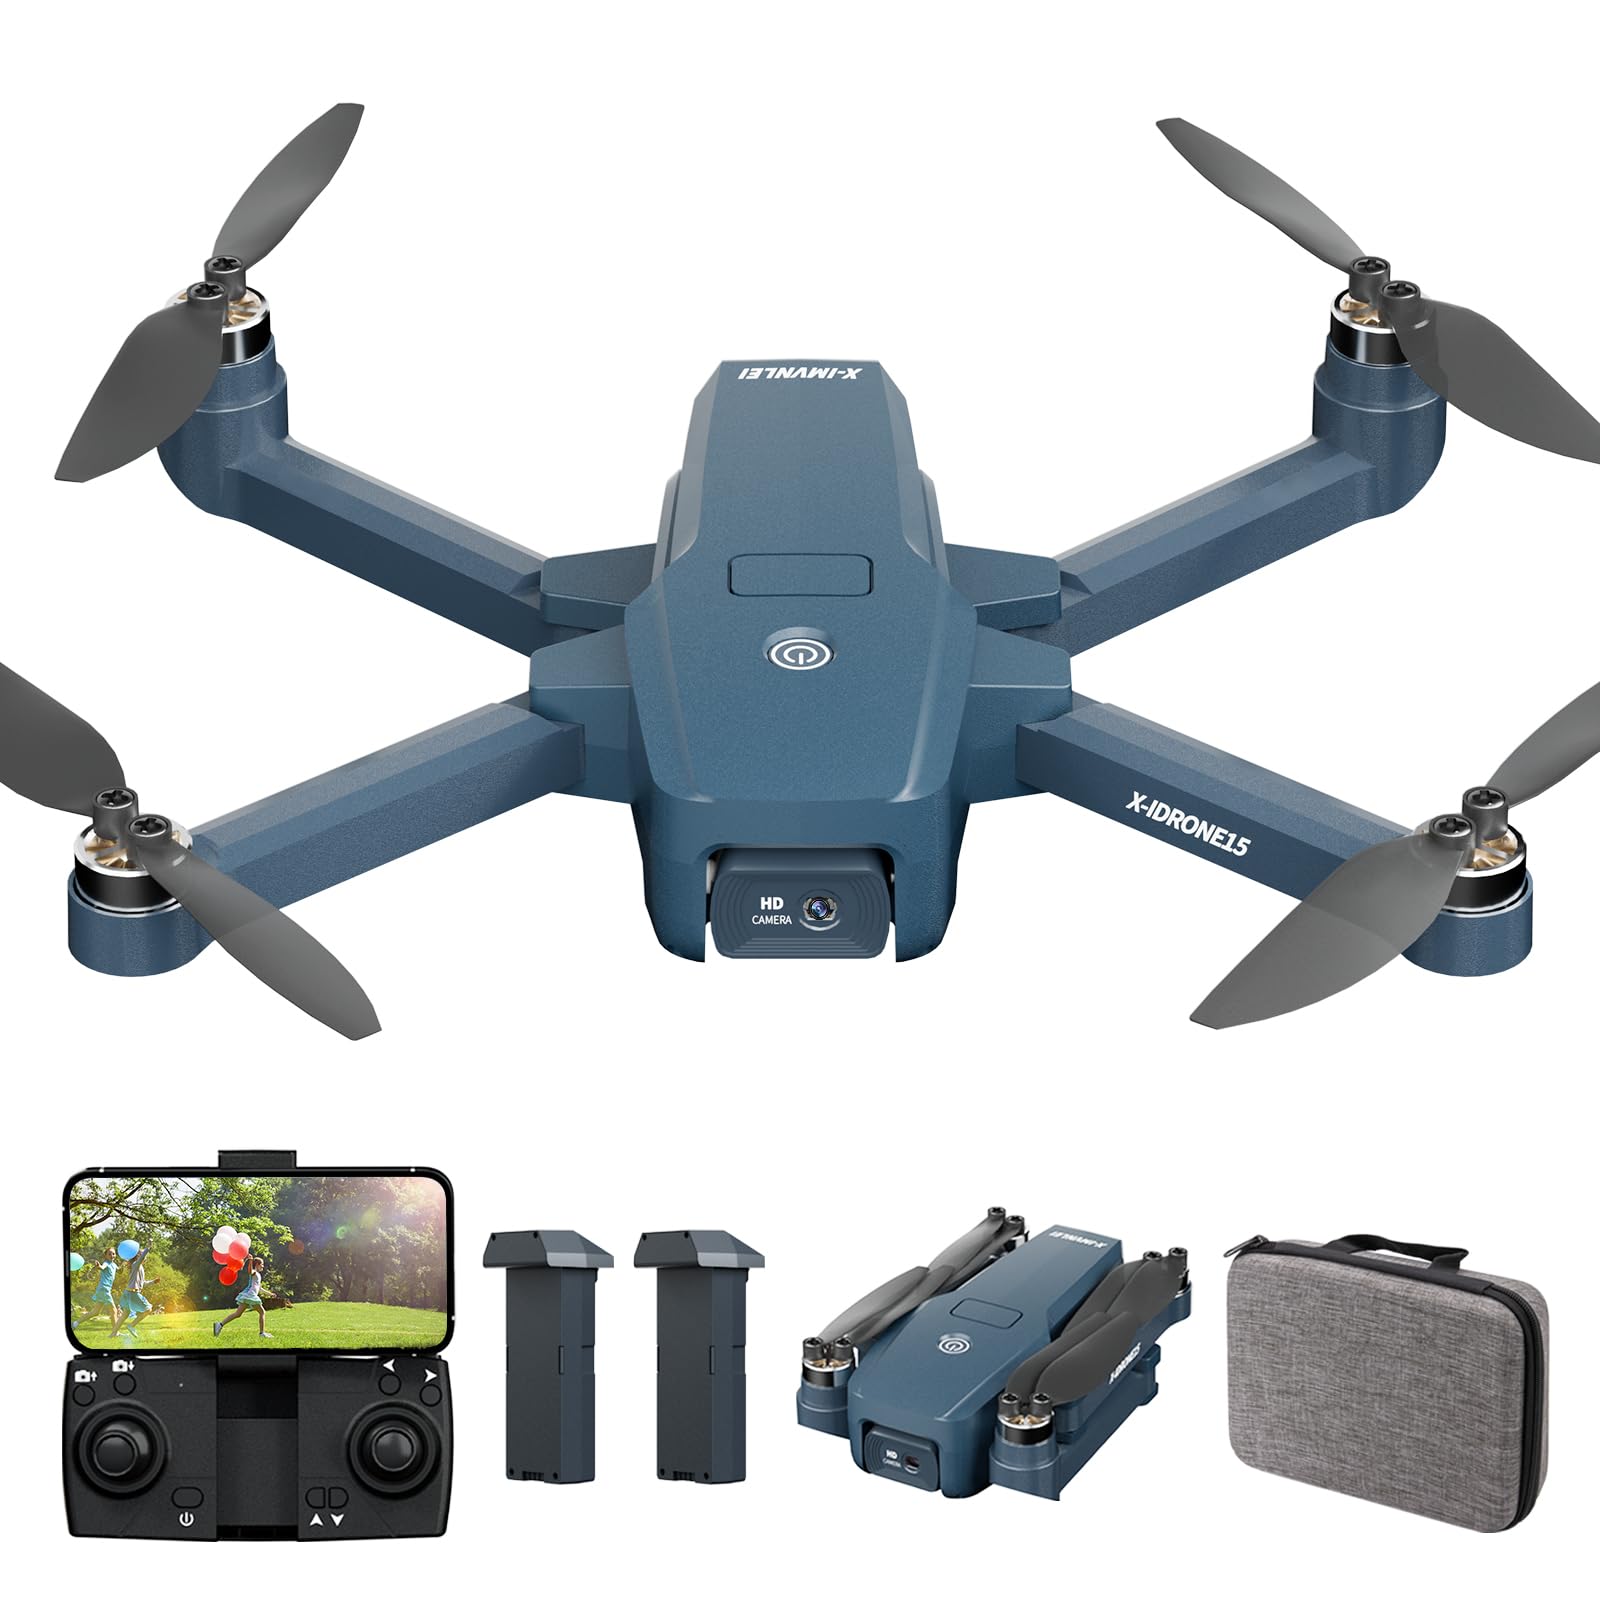 X15 Drohne mit bürstenlosem Motor, 4K HD-Kamera für Anfänger, 11 m/s MAX Livello Vento 4, Fernbedienung, 5G WiFi FPV Video, Erwachsene, Professional, RC-Quadcopter, UAV, Helikopter-Drohne, 2 Akkus von X-IMVNLEI